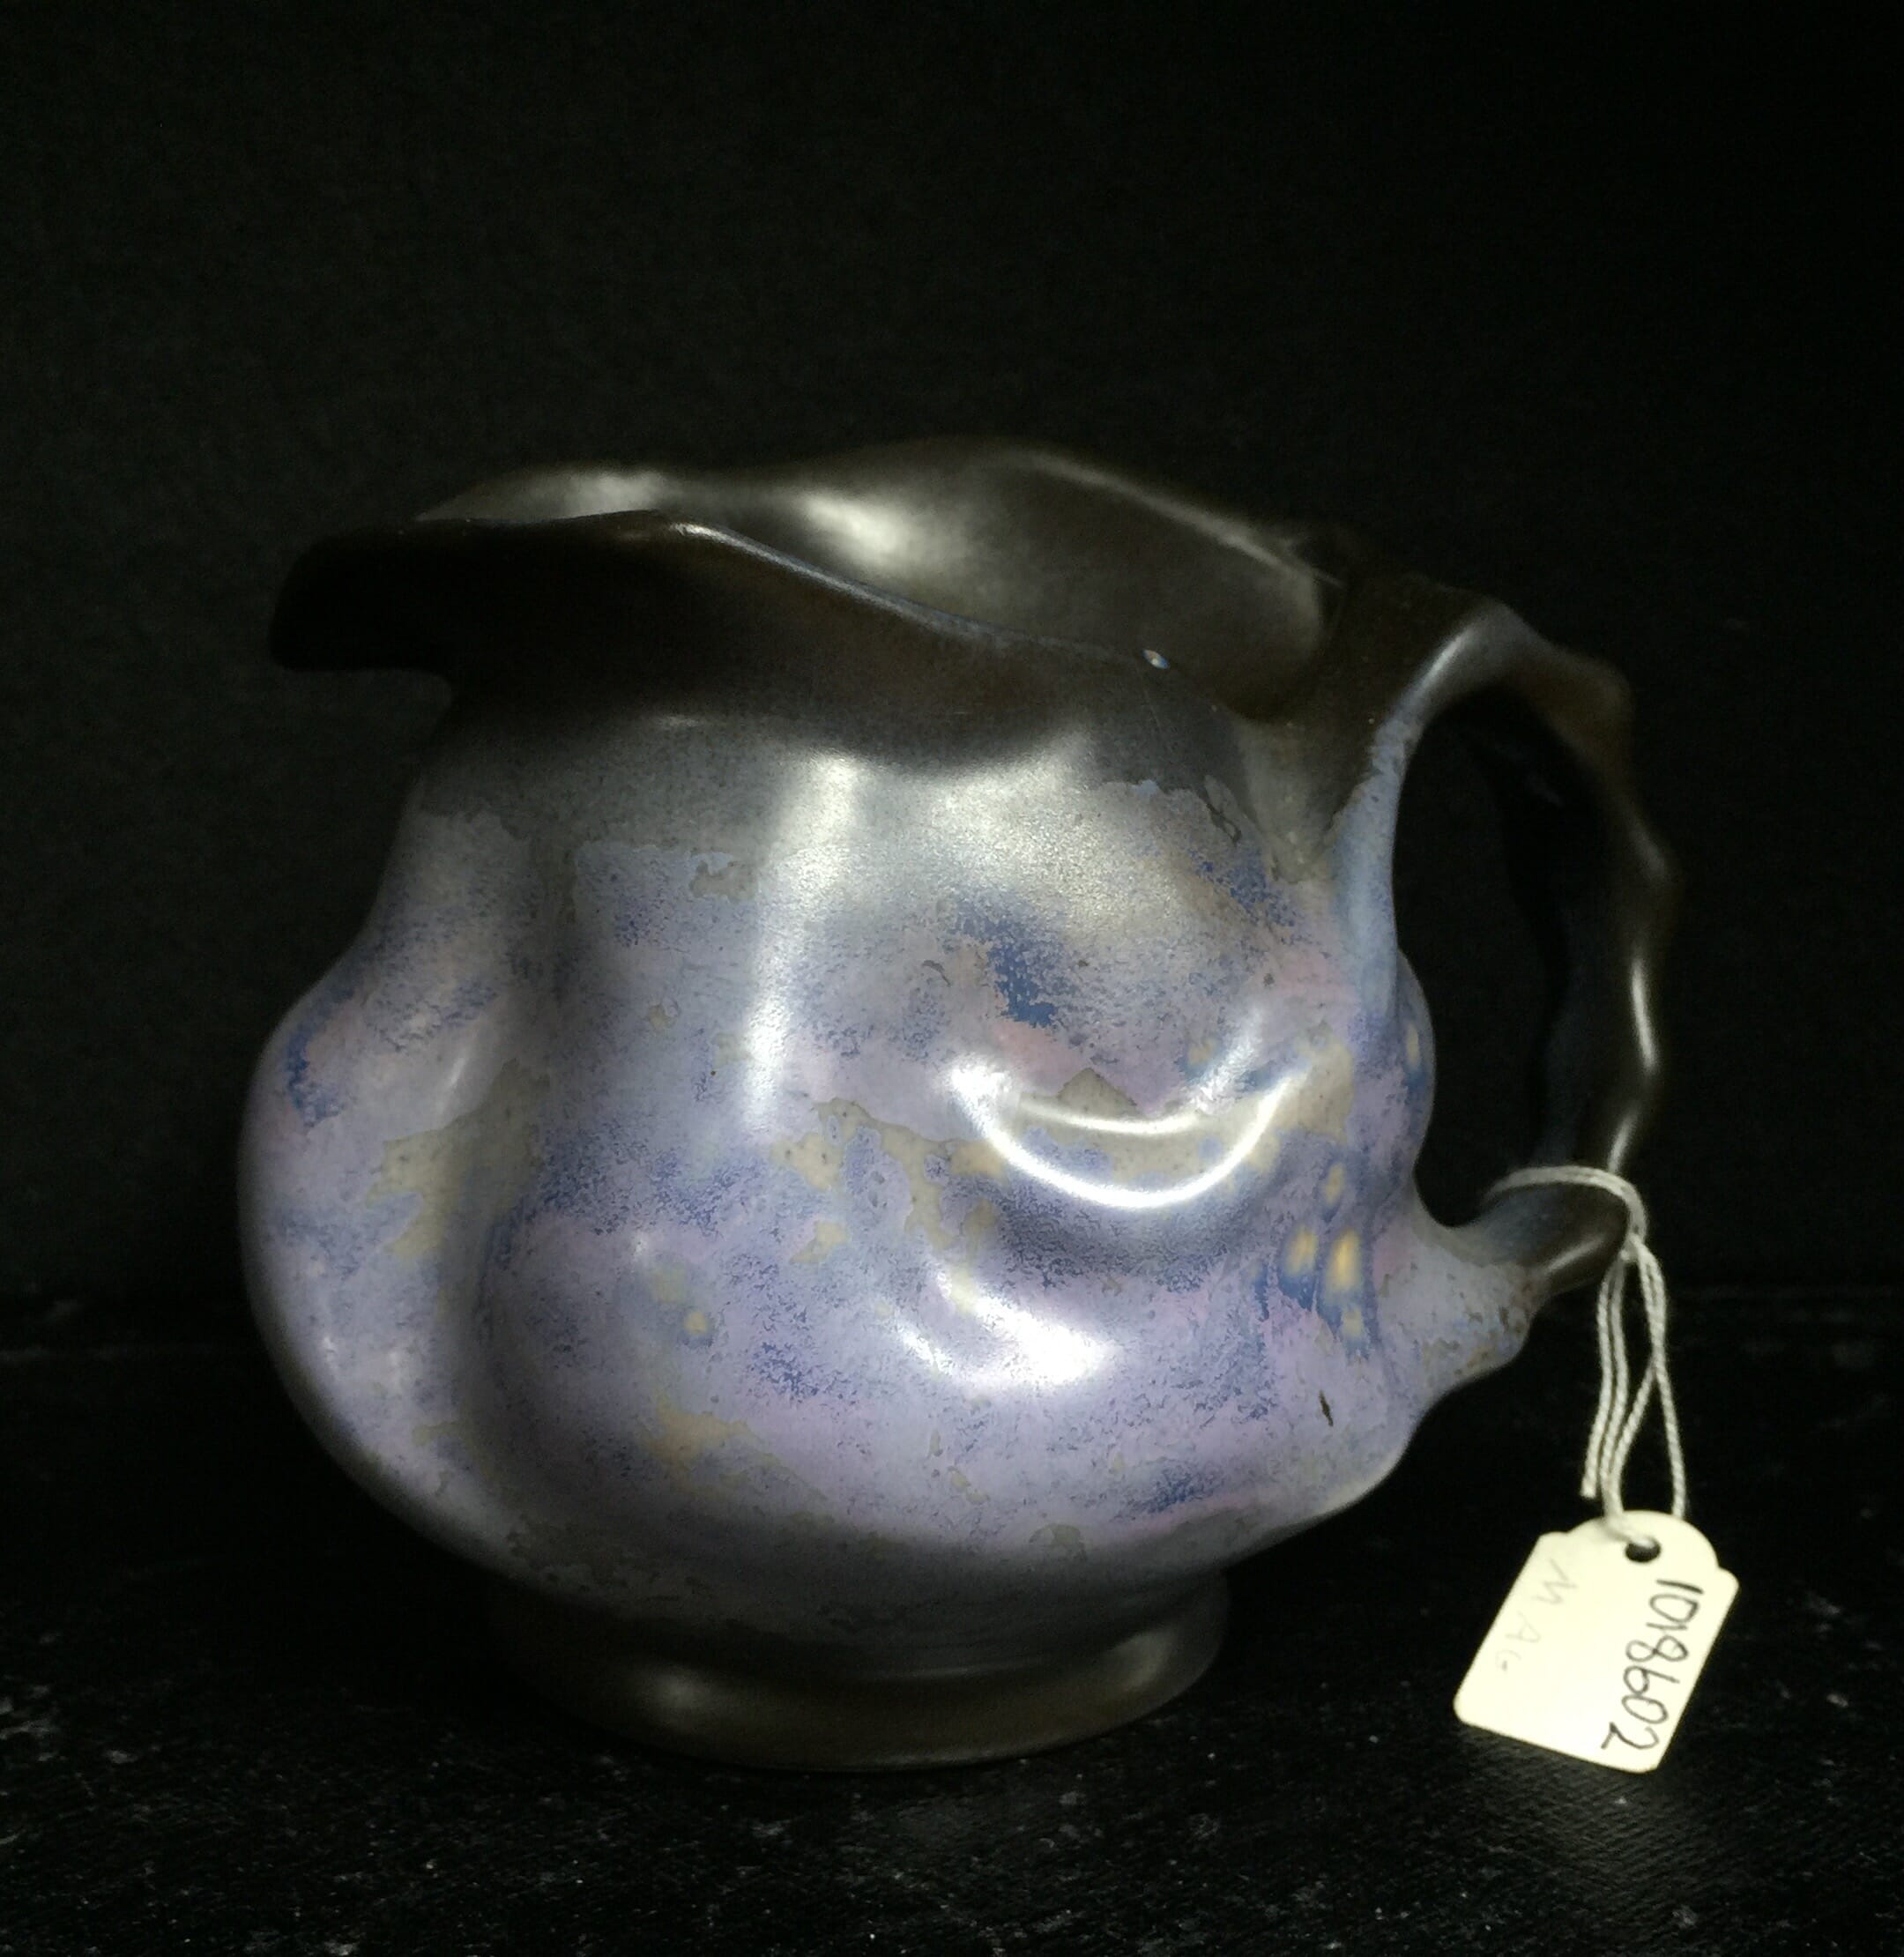 Goedewaagen jug with lavender glaze, fantastic nouveau shape, c. 1935-0